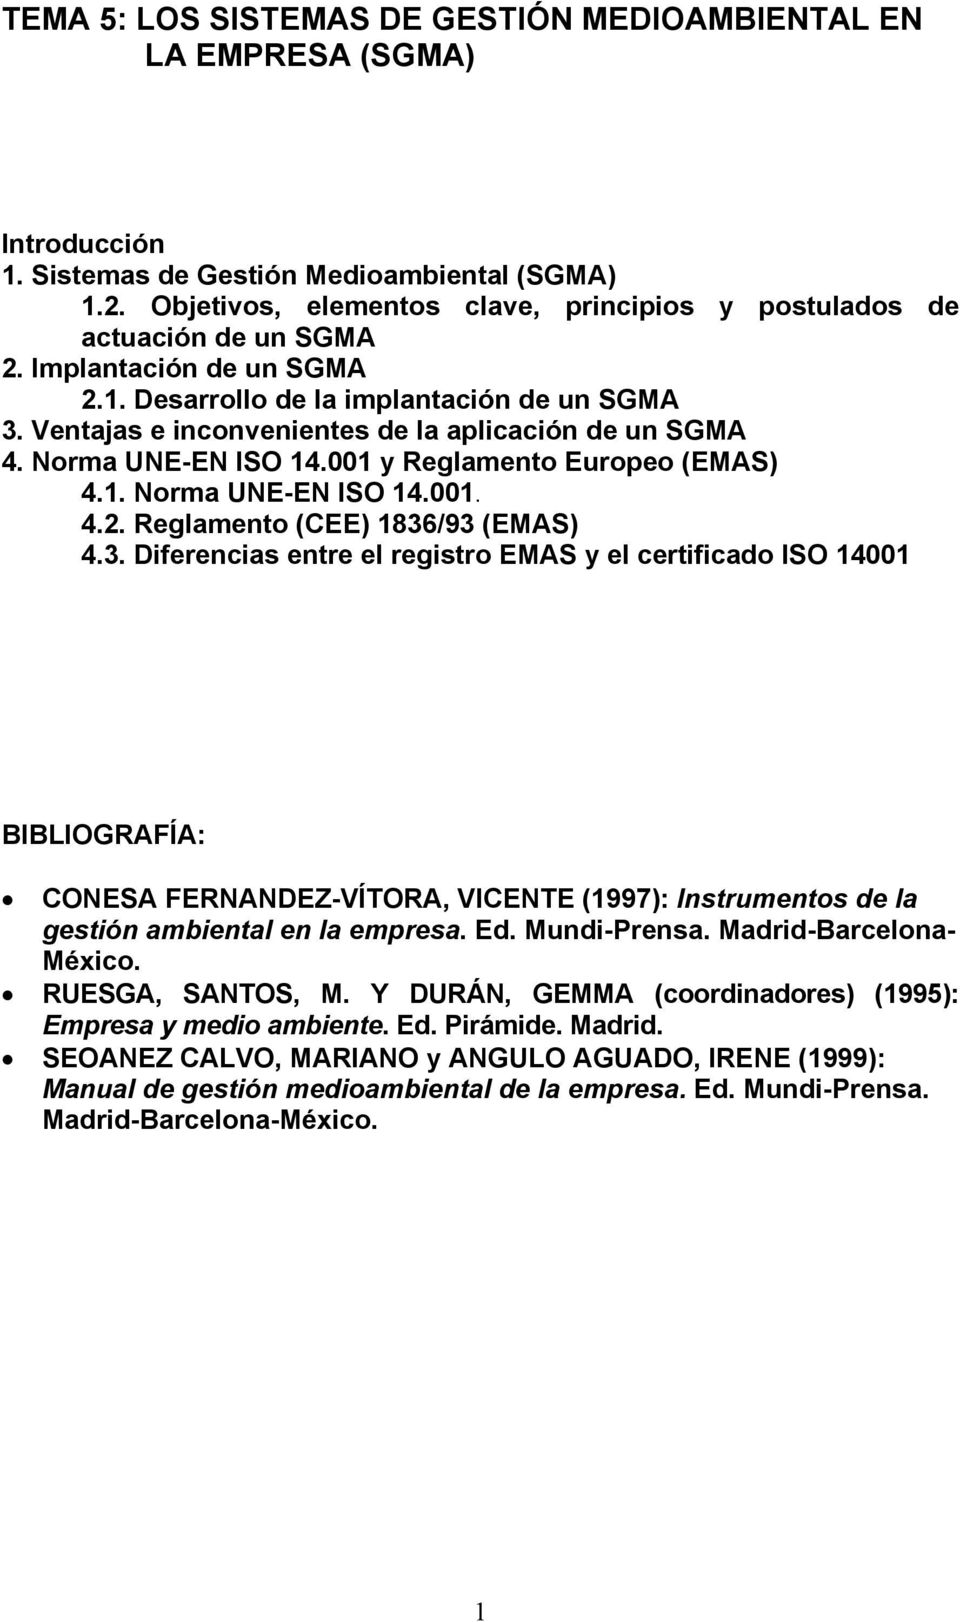 Ventajas e inconvenientes de la aplicación de un SGMA 4. Norma UNE-EN ISO 14.001 y Reglamento Europeo (EMAS) 4.1. Norma UNE-EN ISO 14.001. 4.2. Reglamento (CEE) 1836